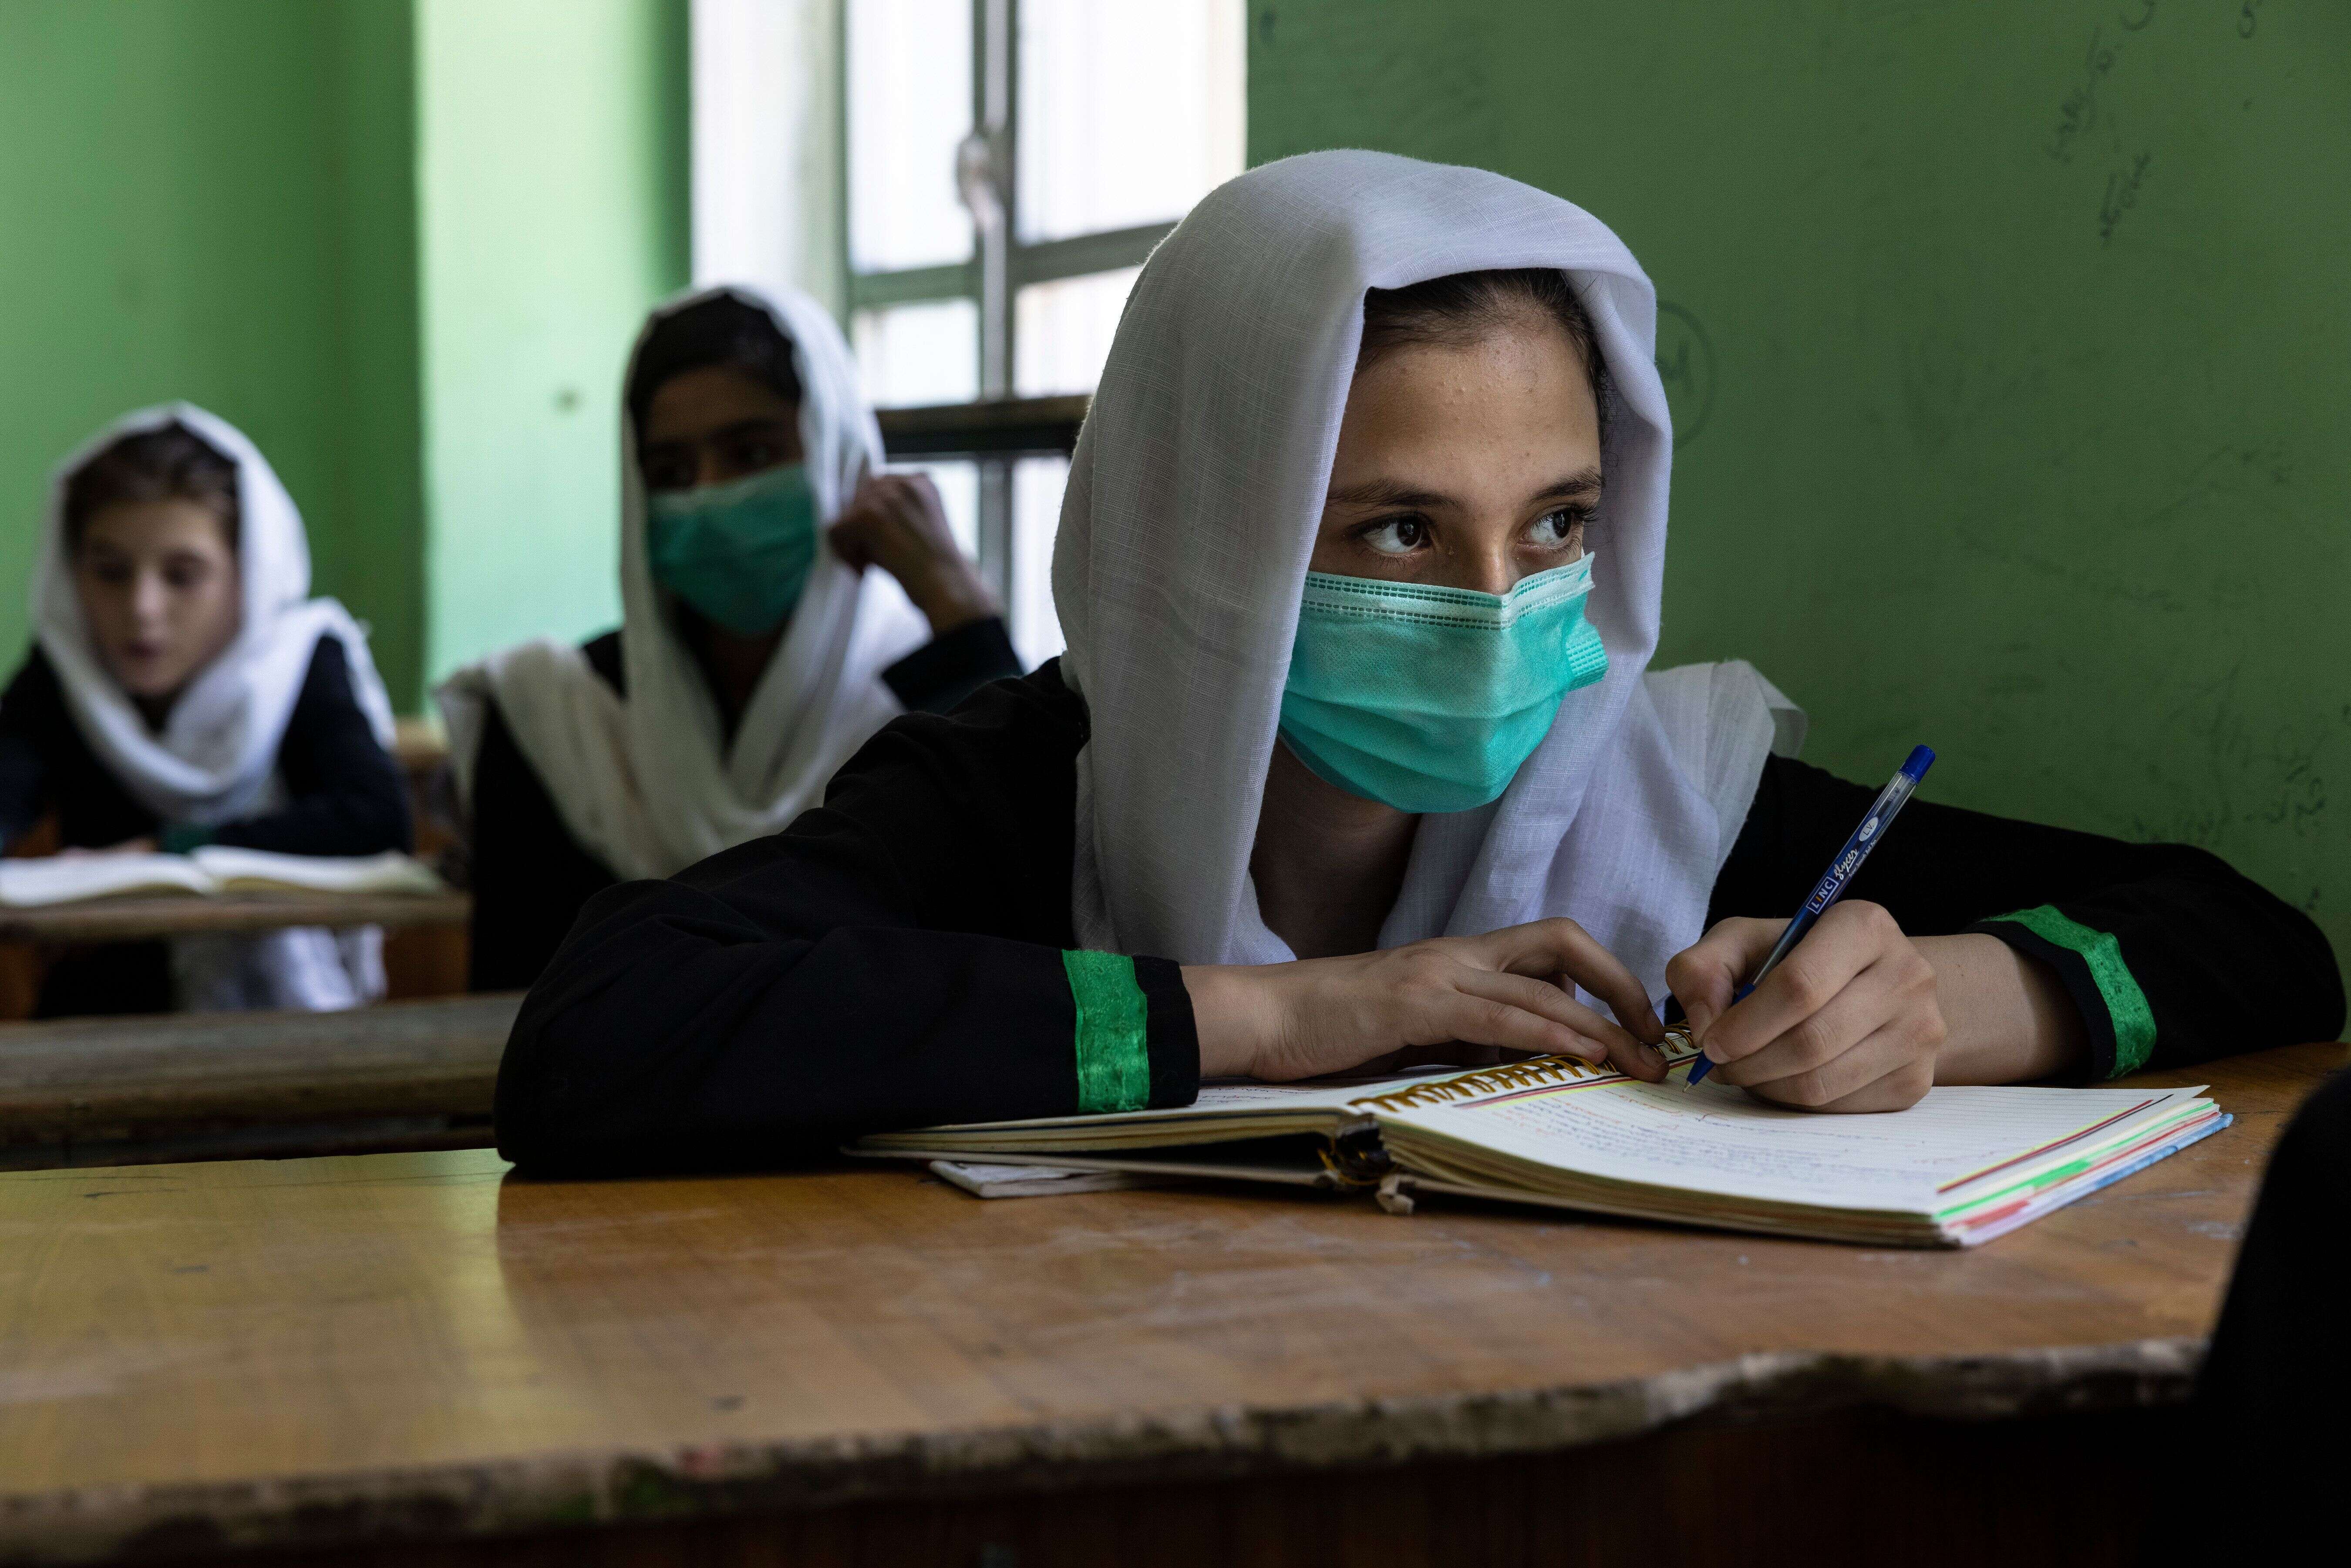 KABOUL, AFGHANISTAN - 24 JUILLET : Behishta, 13 ans, prend des notes pendant son cours de 7e année au lycée Zarghoona, le 24 juillet 2021 à Kaboul, en Afghanistan. Le lycée de filles Zarghoona est l'un des plus grands de Kaboul, avec 8 500 étudiantes. Aujourd'hui, l'école a fait une brève ouverture après une interruption de près de deux mois due au coronavirus. Actuellement, la crainte est grande que les talibans, qui contrôlent déjà près de la moitié du pays, ne réintroduisent leur système notoire qui interdit aux filles et aux femmes la quasi-totalité des emplois et l'accès à l'éducation. Le ministère de l'éducation a annoncé l'ouverture d'écoles, mais les rapports sont mitigés dans de nombreuses régions où les talibans ont pris le contrôle ou où les combats se poursuivent. (Photo par Paula Bronstein /Getty Images)